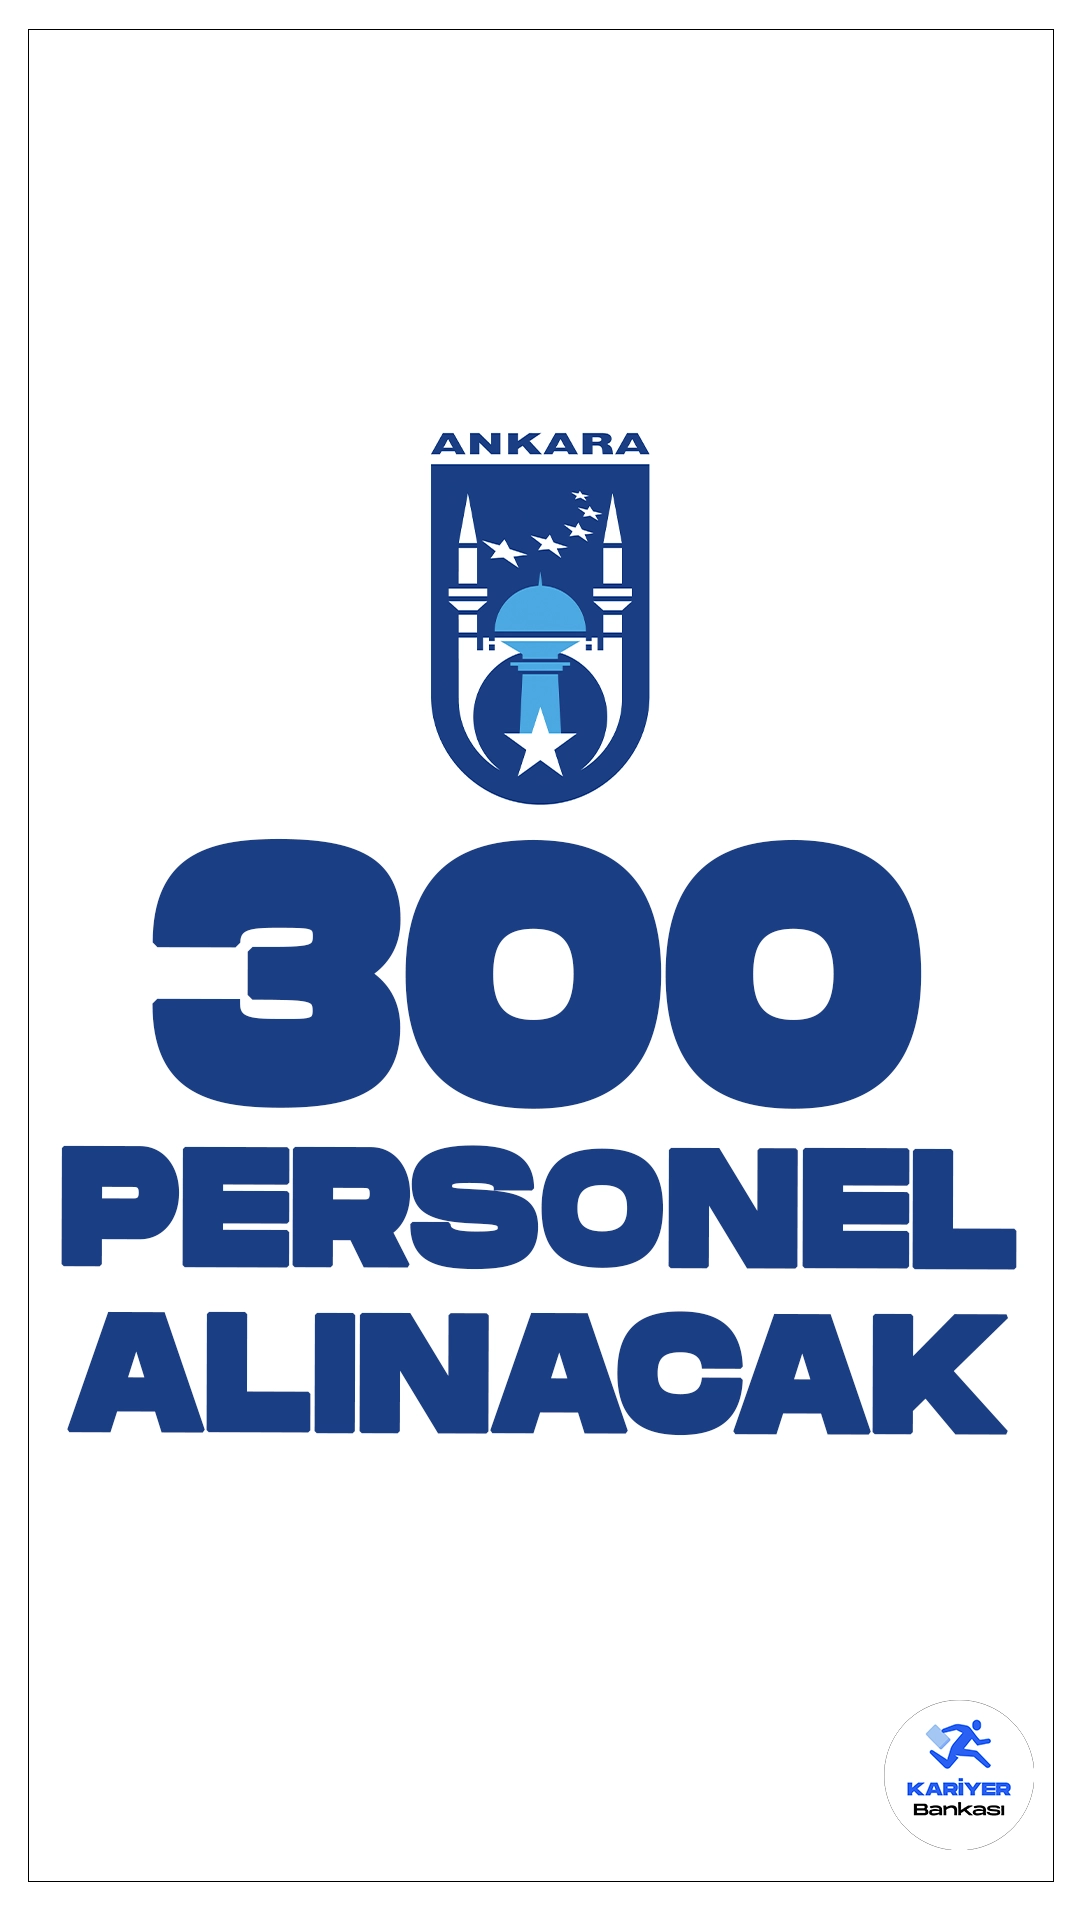 Ankara Büyükşehir Belediyesi (ABB) Bugsaş 300 Personel Alımı Yapacak.ABB Bugsağ tarafından İŞKUR sayfasından yayınlanan duyuruda, 300 şoför alımı yapılacağı belirtildi. Başvurular şahsen veya internet üzerinden gerçekleştirilebilecek. İşte detaylar: